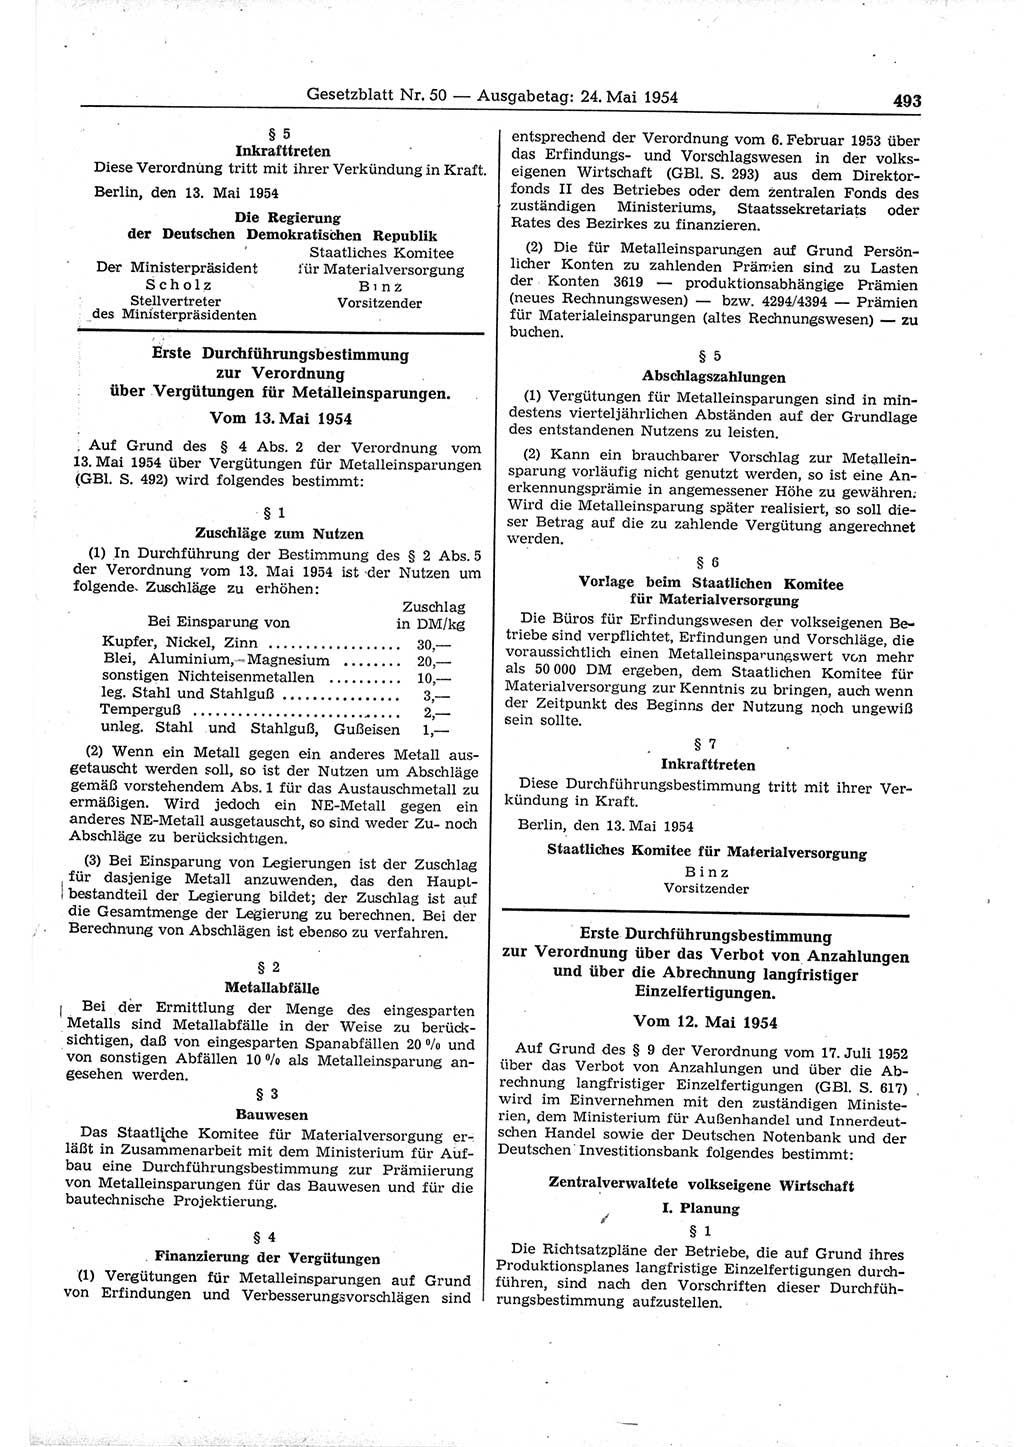 Gesetzblatt (GBl.) der Deutschen Demokratischen Republik (DDR) 1954, Seite 493 (GBl. DDR 1954, S. 493)